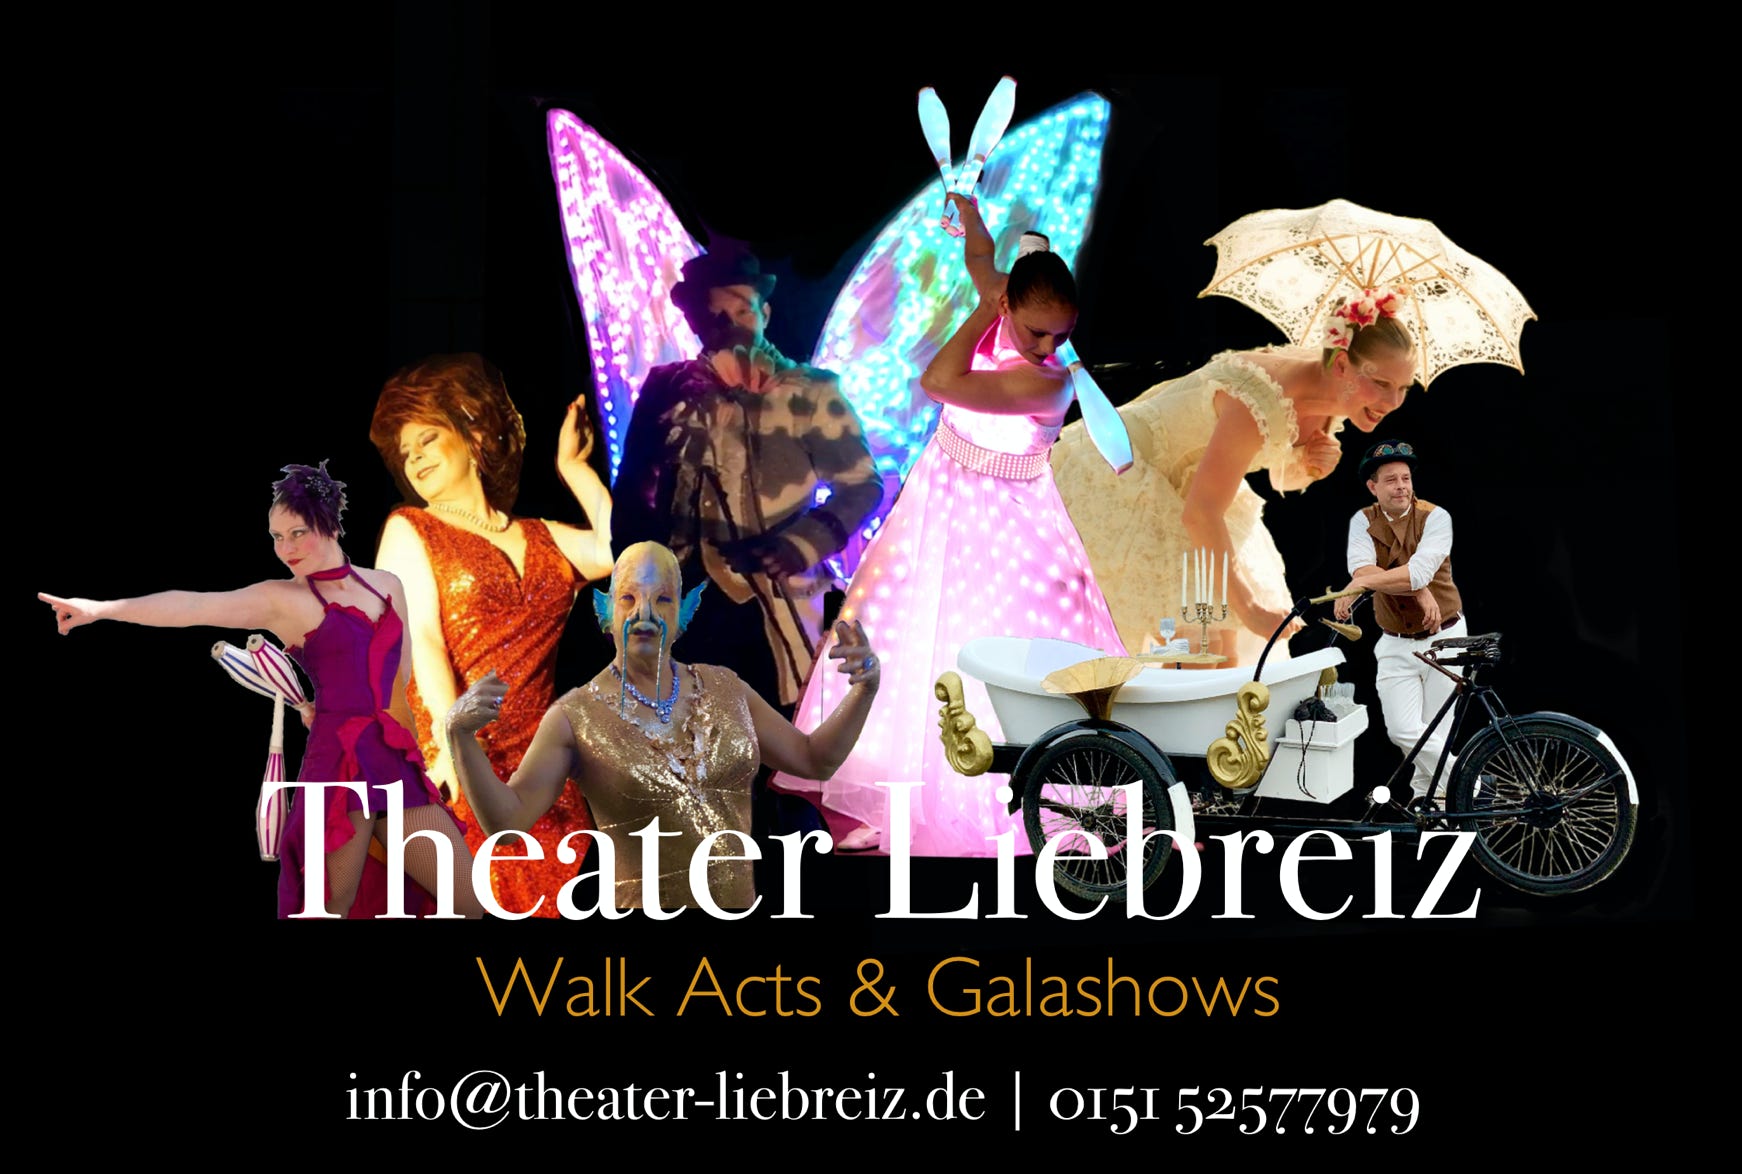 Das theater Liebreiz ist ein kleines Gala und Variete Theater aus Lübeck aber unterwegs in der ganze Welt